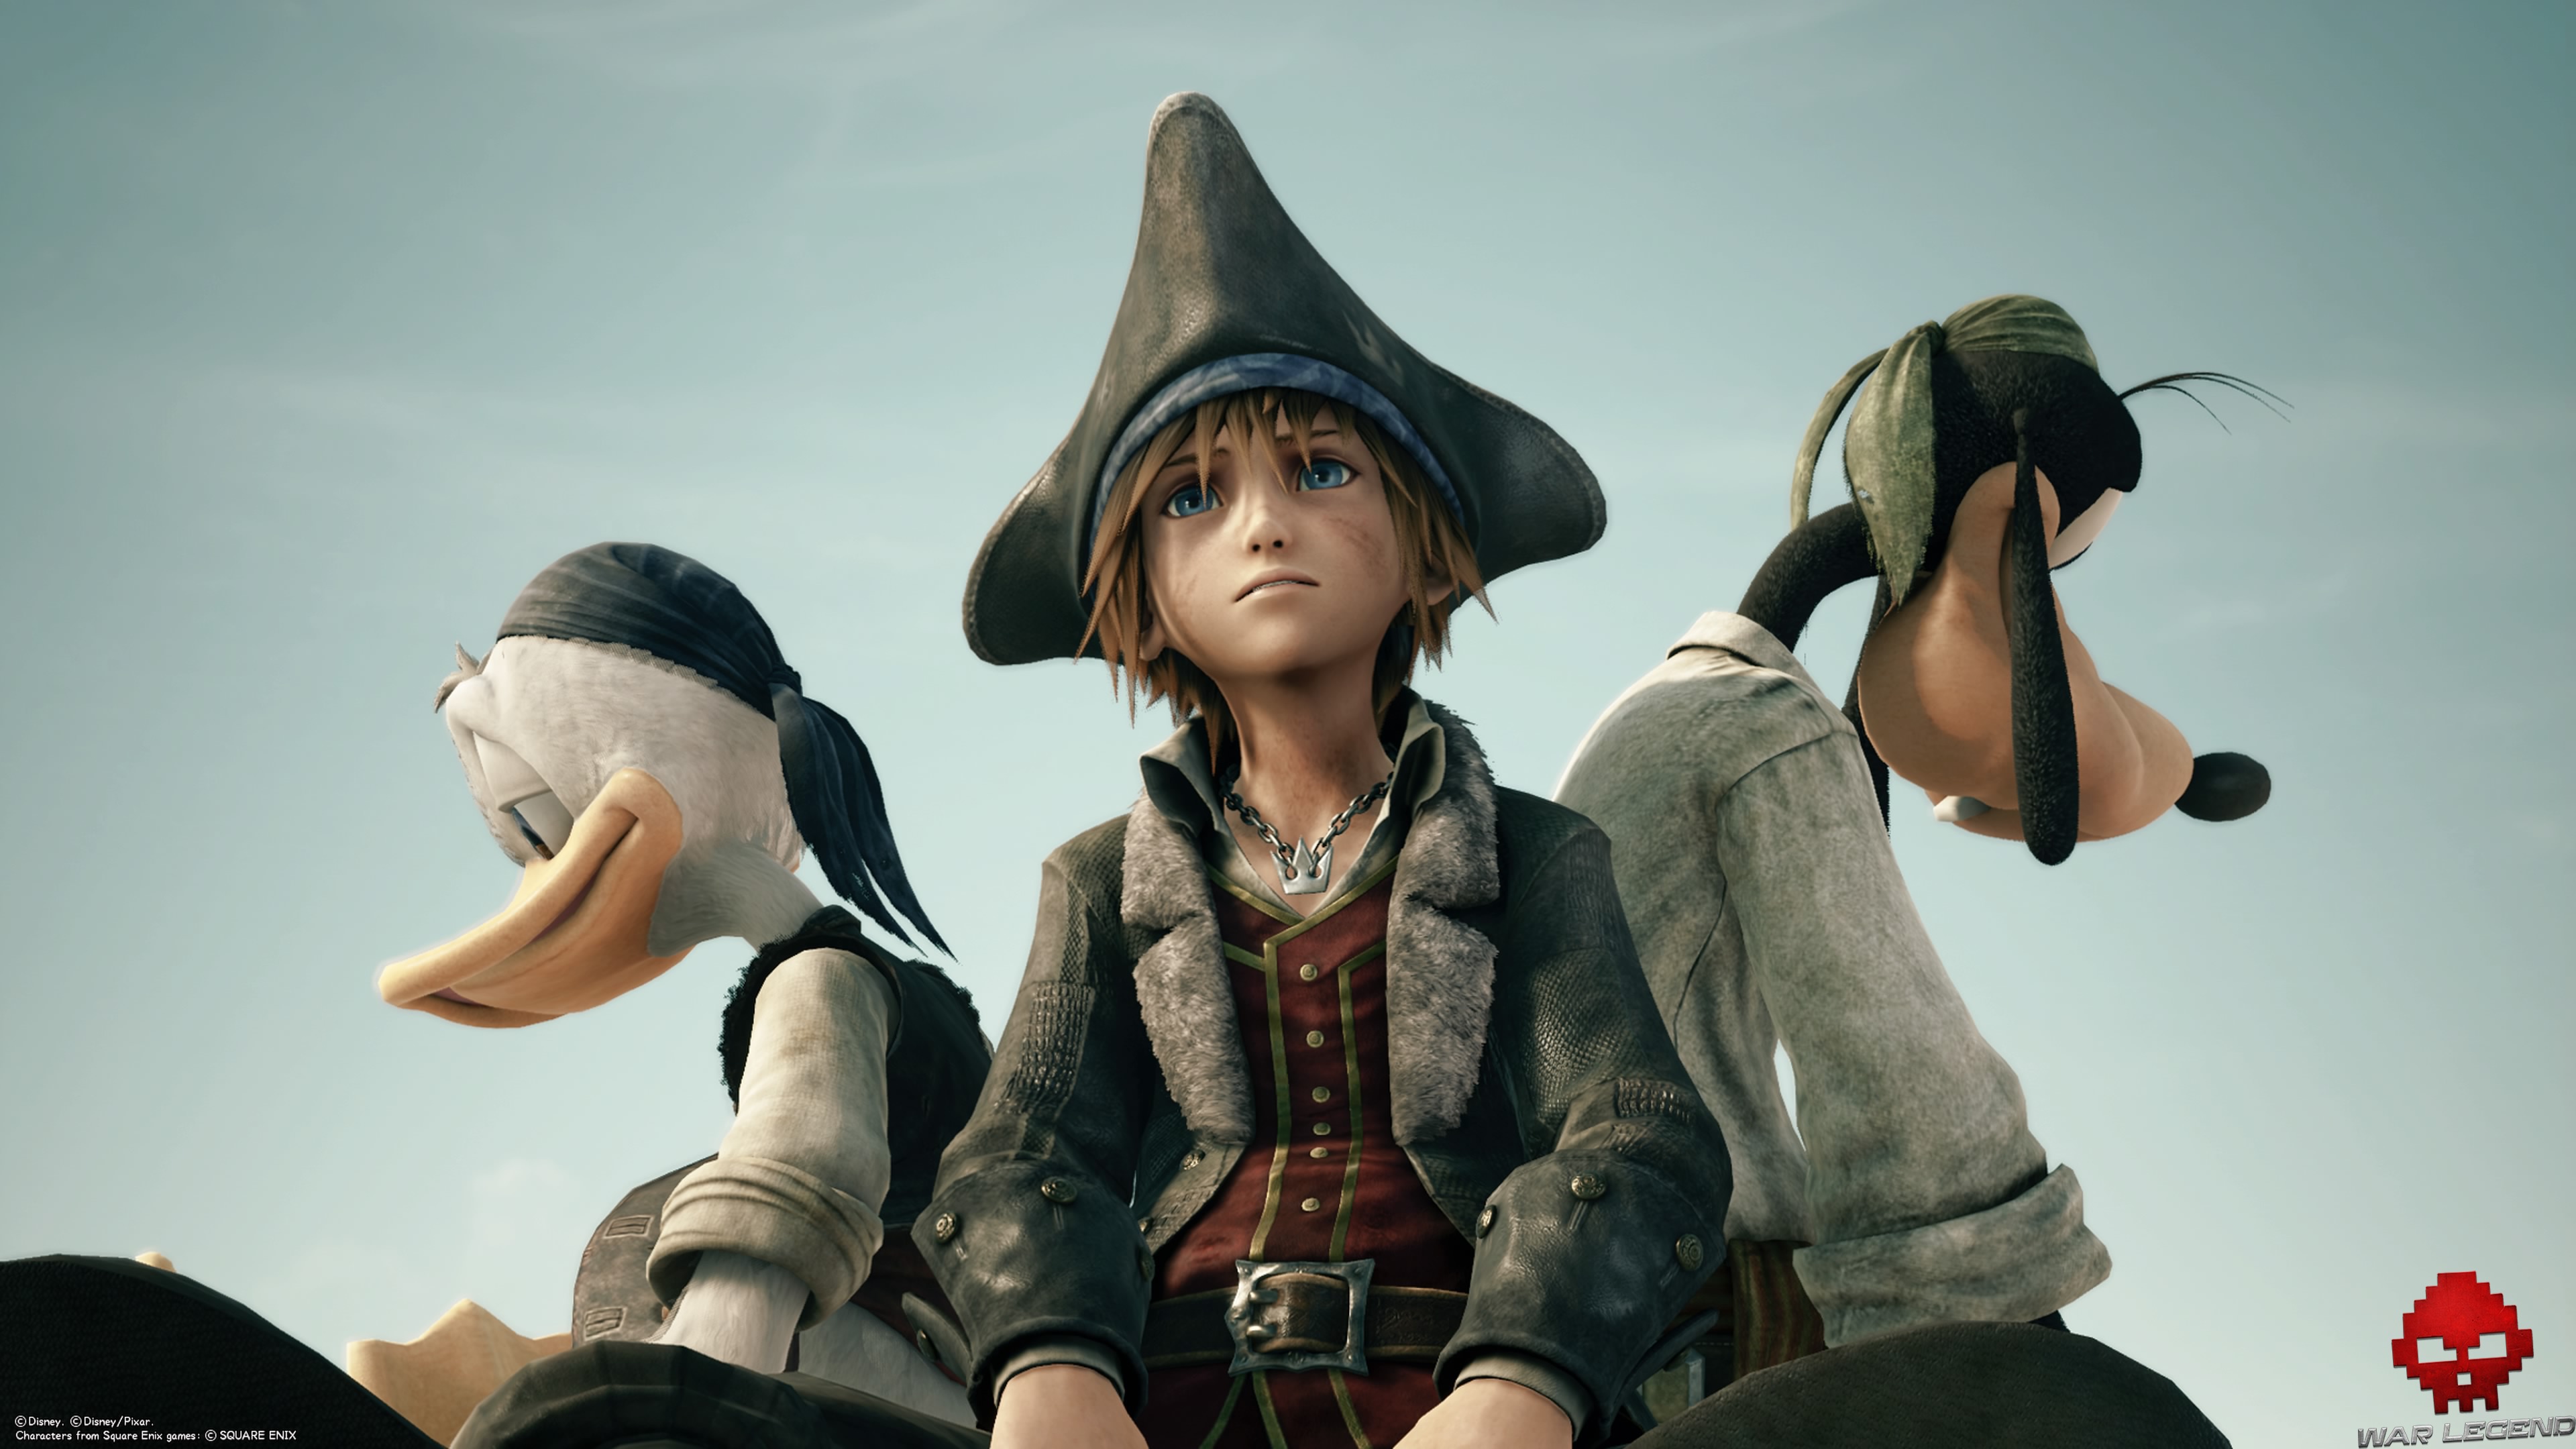 Sora, Donald et Dingo dans leur tenue de pirate